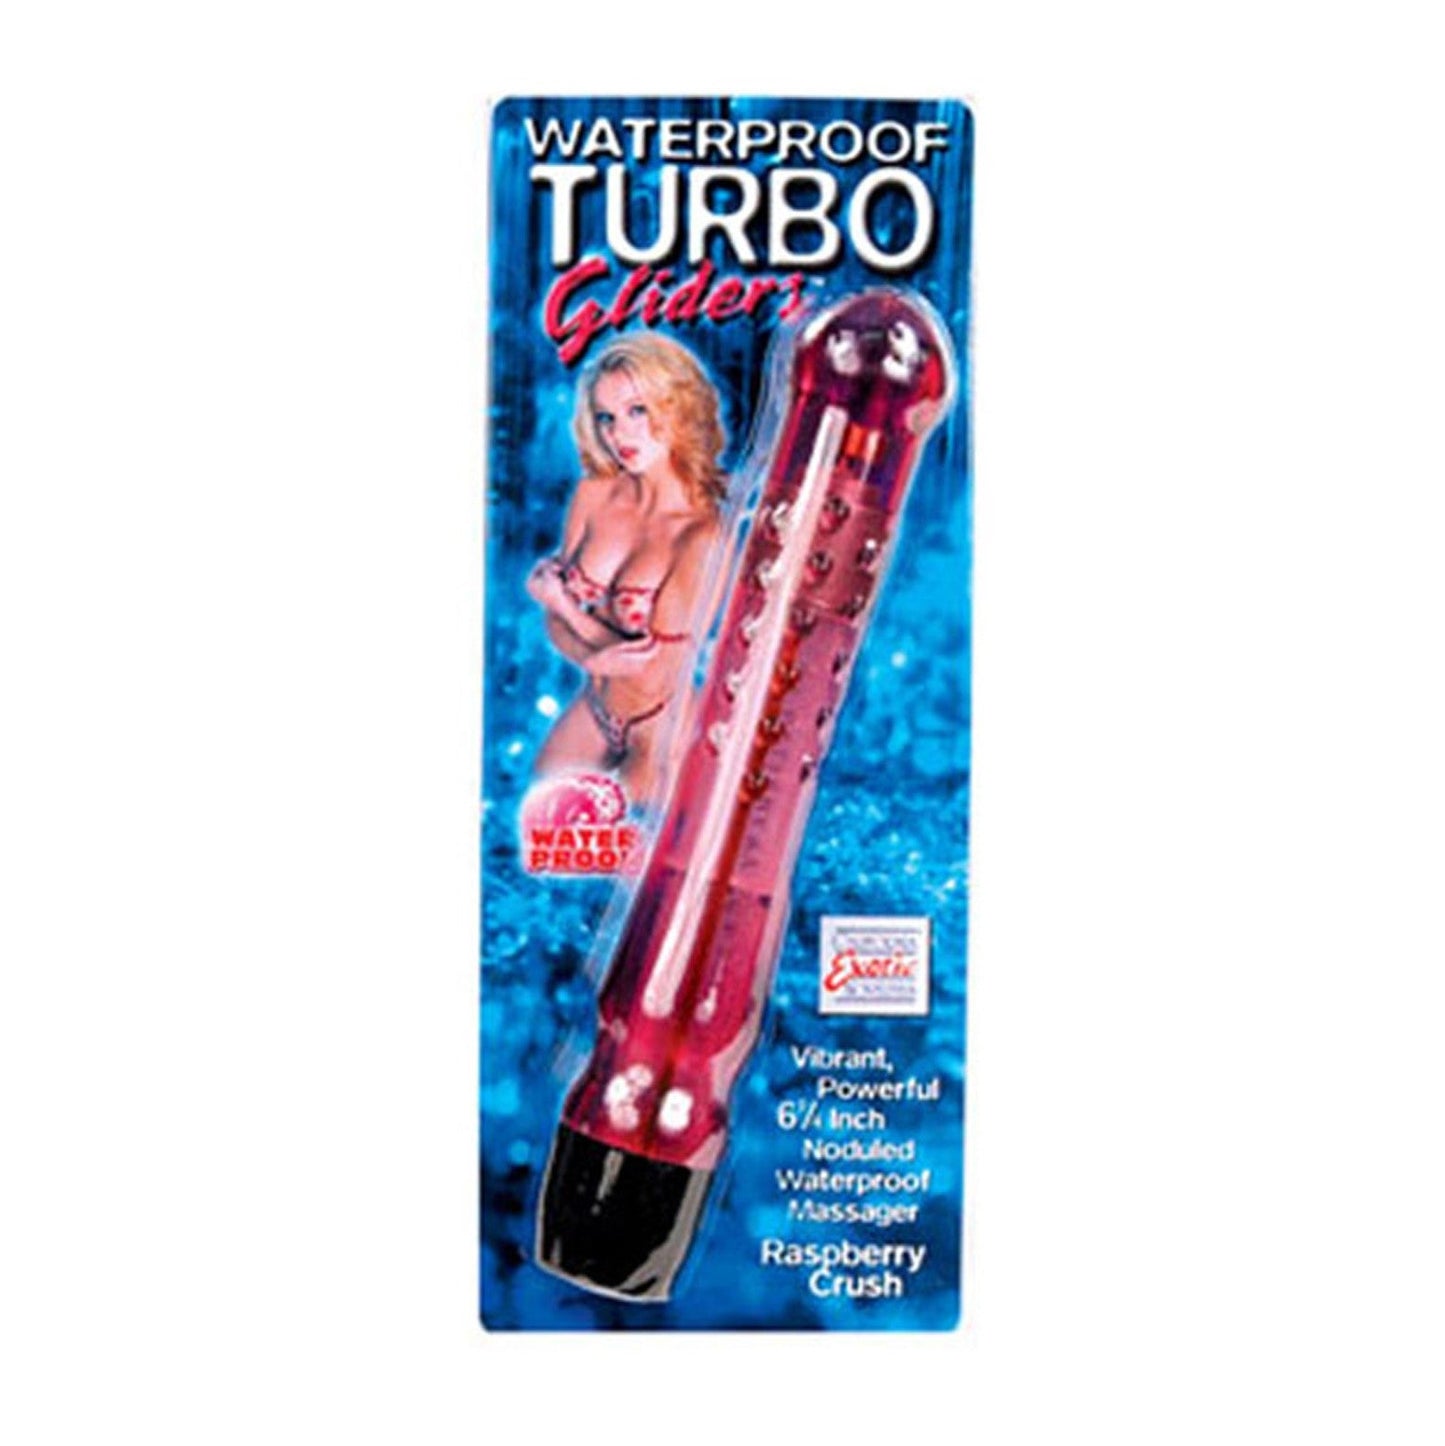 Waterproof Turbo Glider - Raspberry Crush